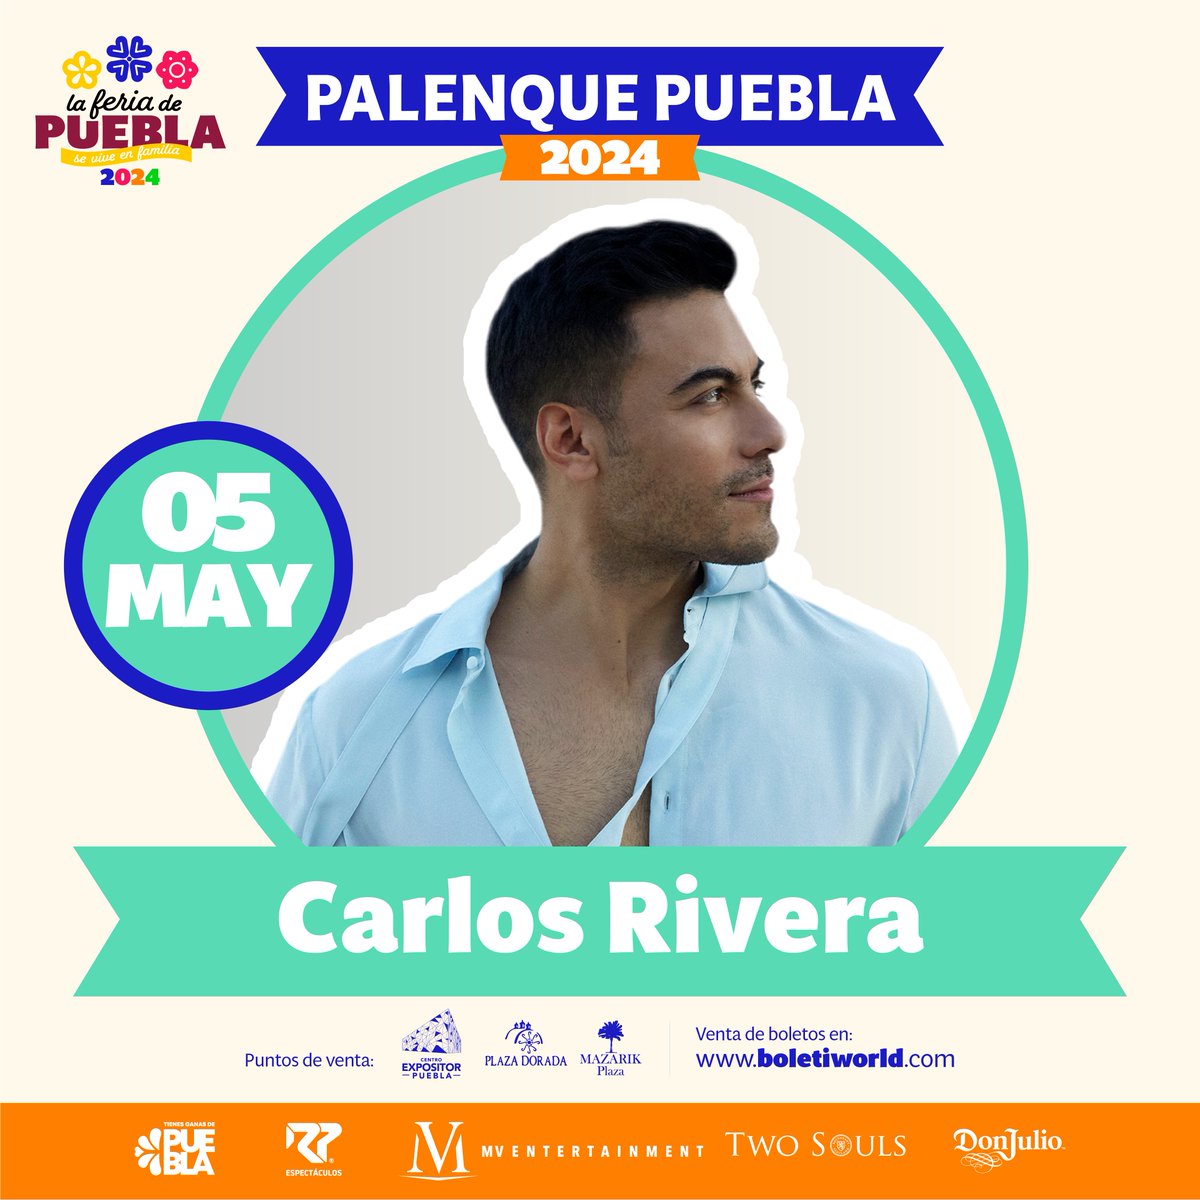 ¡No te lo puedes perder! @_CarlosRivera se presentará este #5deMayo en el Palenque de la @FeriaPuebla. Compra tus boletos 🎟 en boletiworld.com. La #FeriaDePuebla🎡, #SeViveEnFamilia 🤠🎶🎺🪗🤩